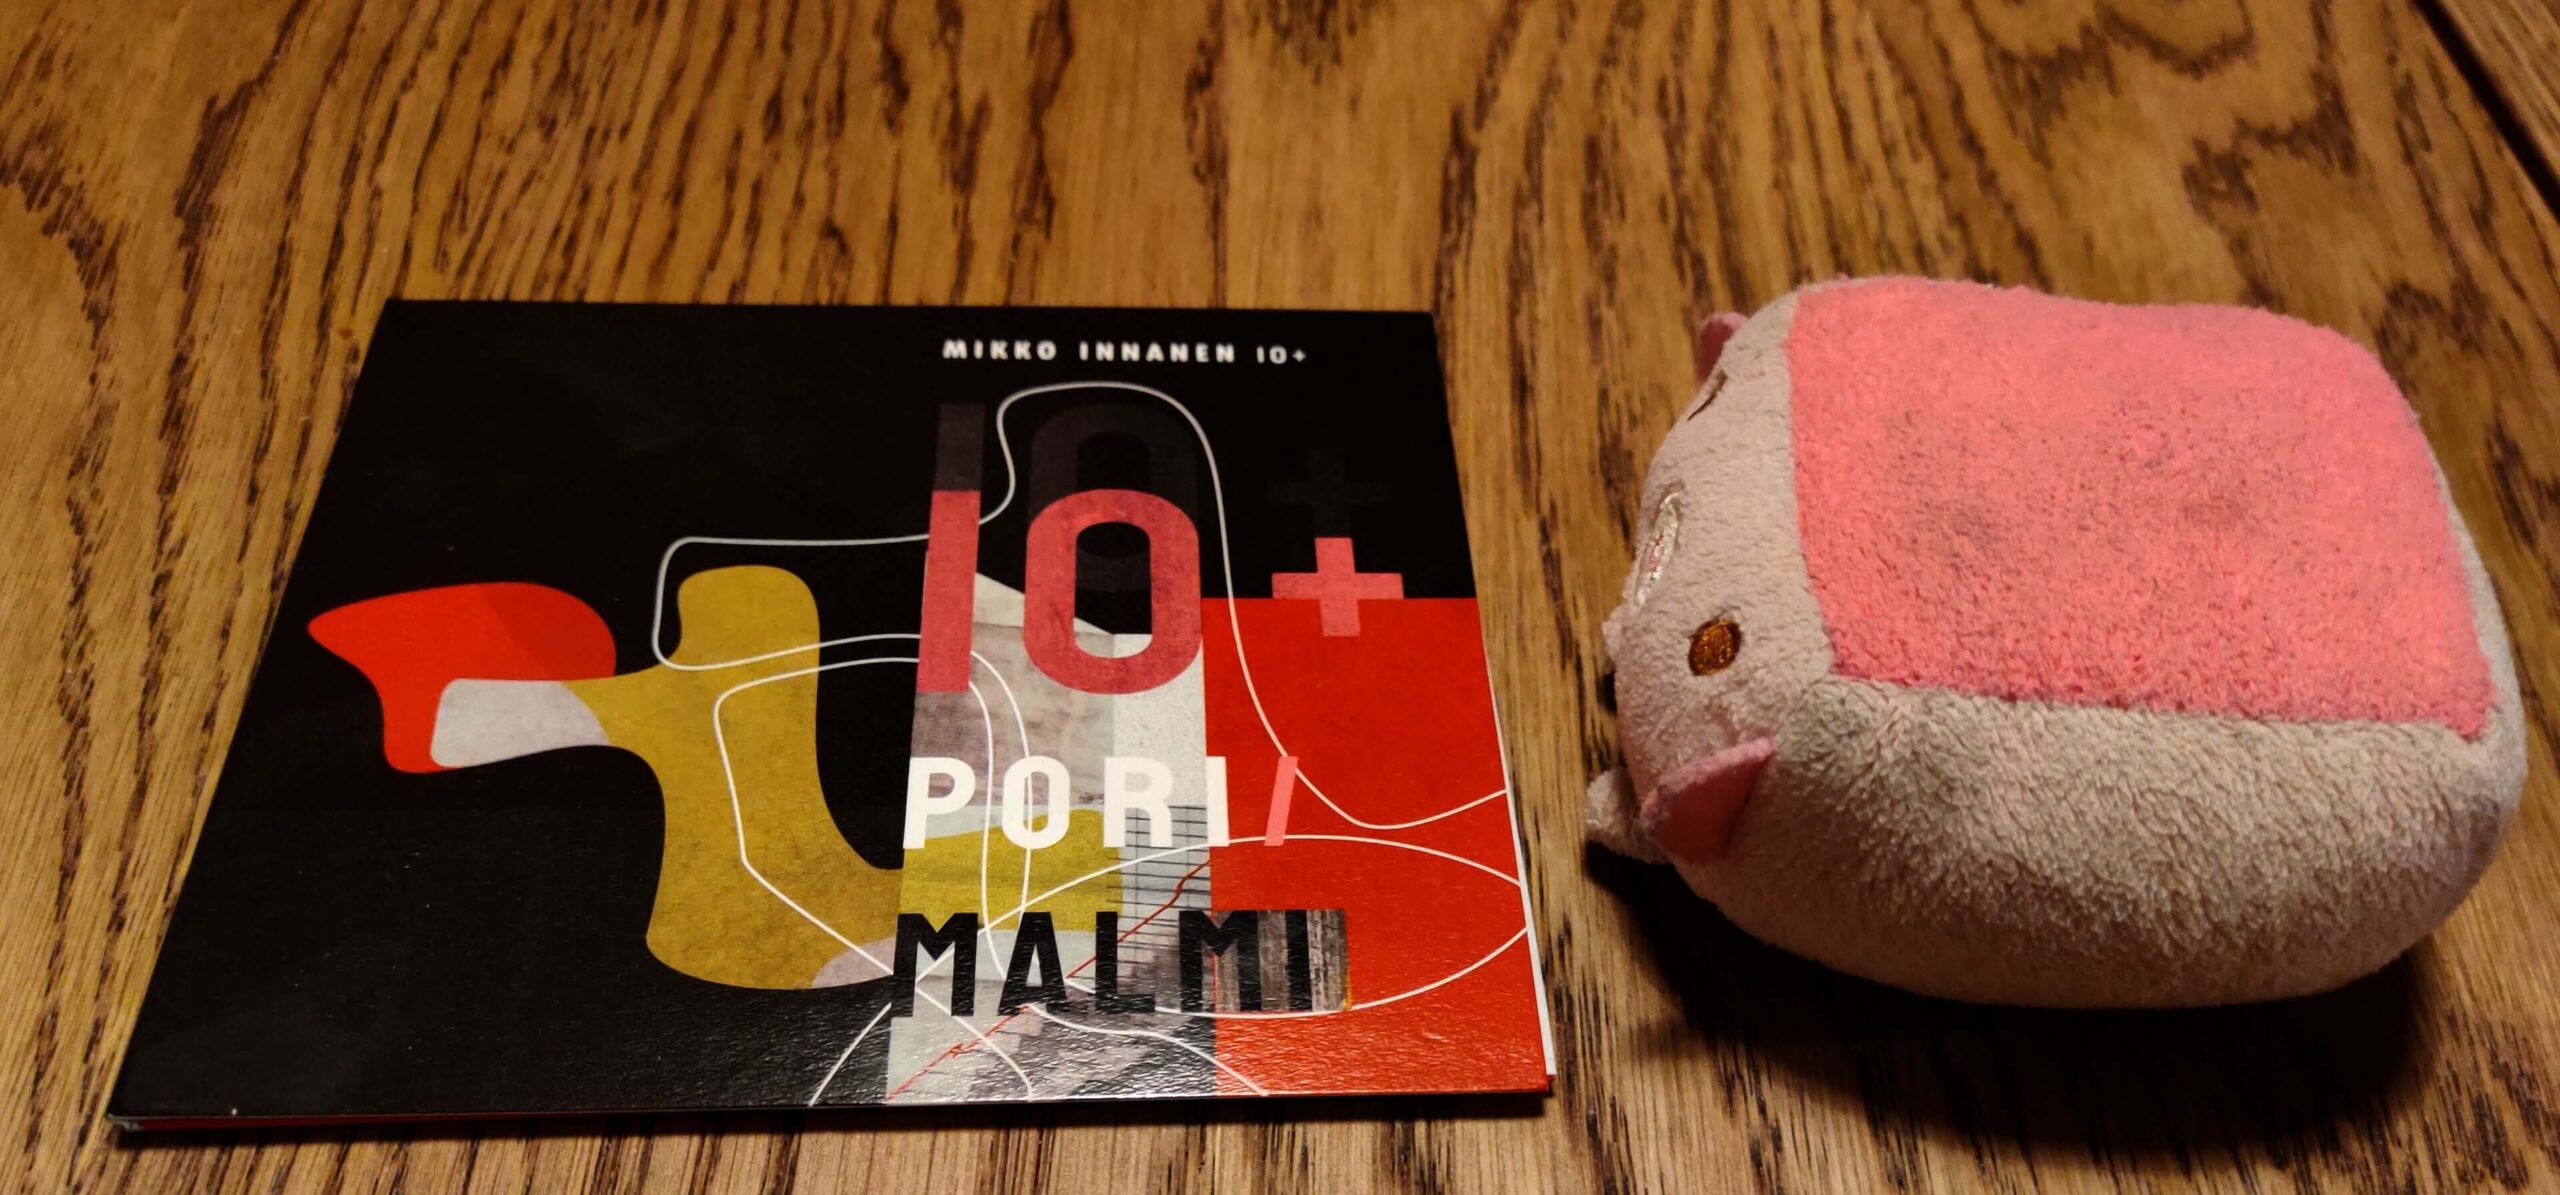 Mikko Innanen 10+ – Pori/Malmi